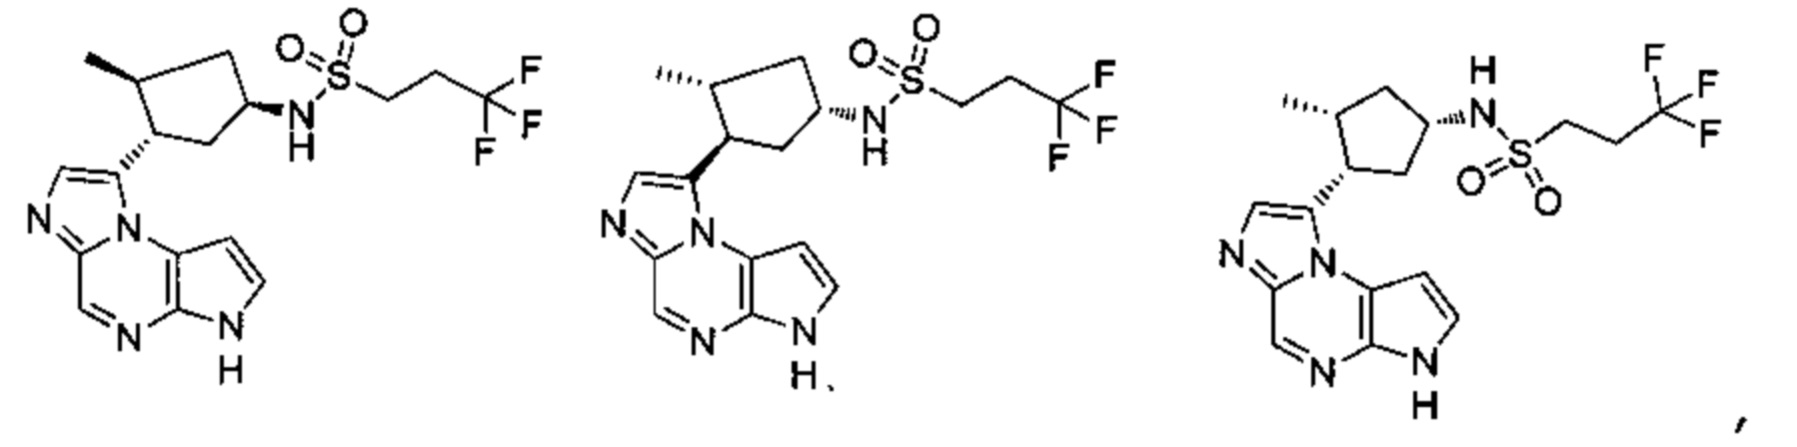 Имидазопирролопиразиновые производные, полезные для лечения заболеваний, вызванных аномальной активностью протеинкиназ Jak1, Jak3 или Syk